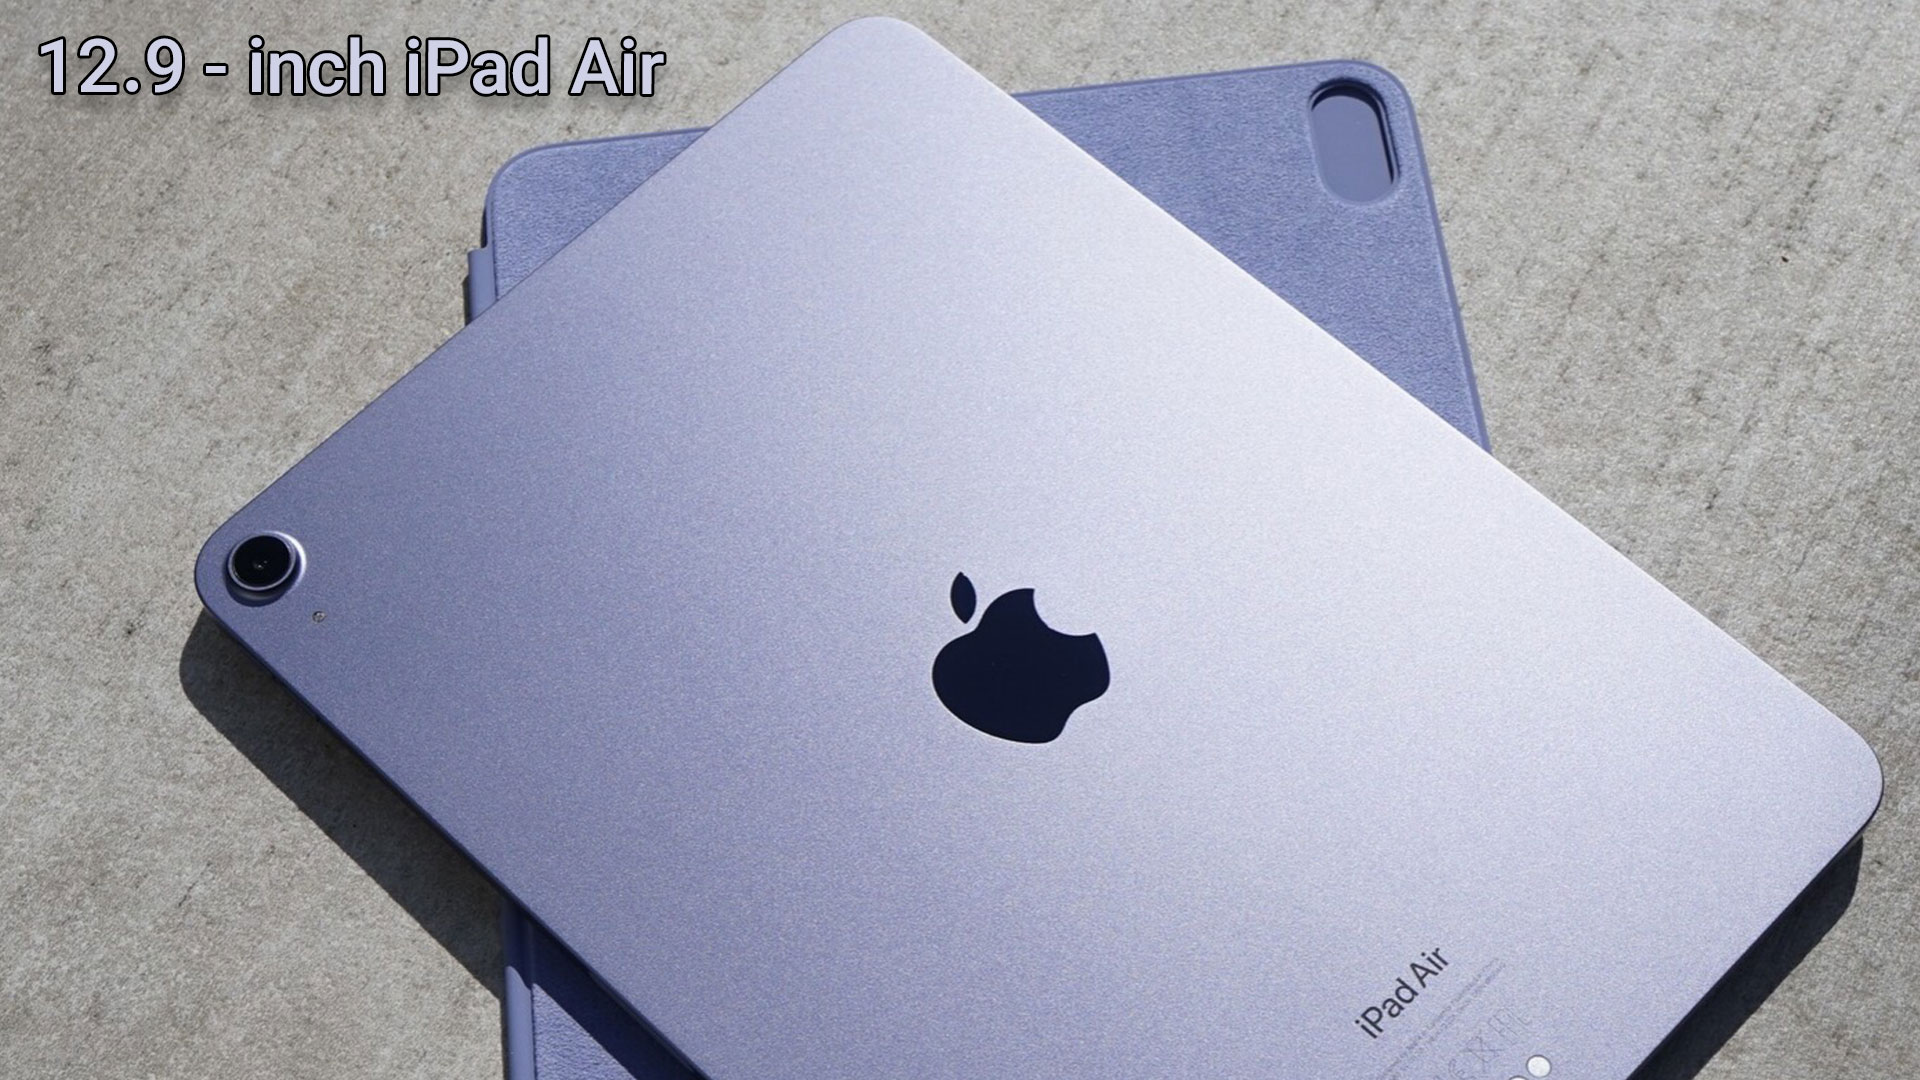 12.9-inch iPad Air